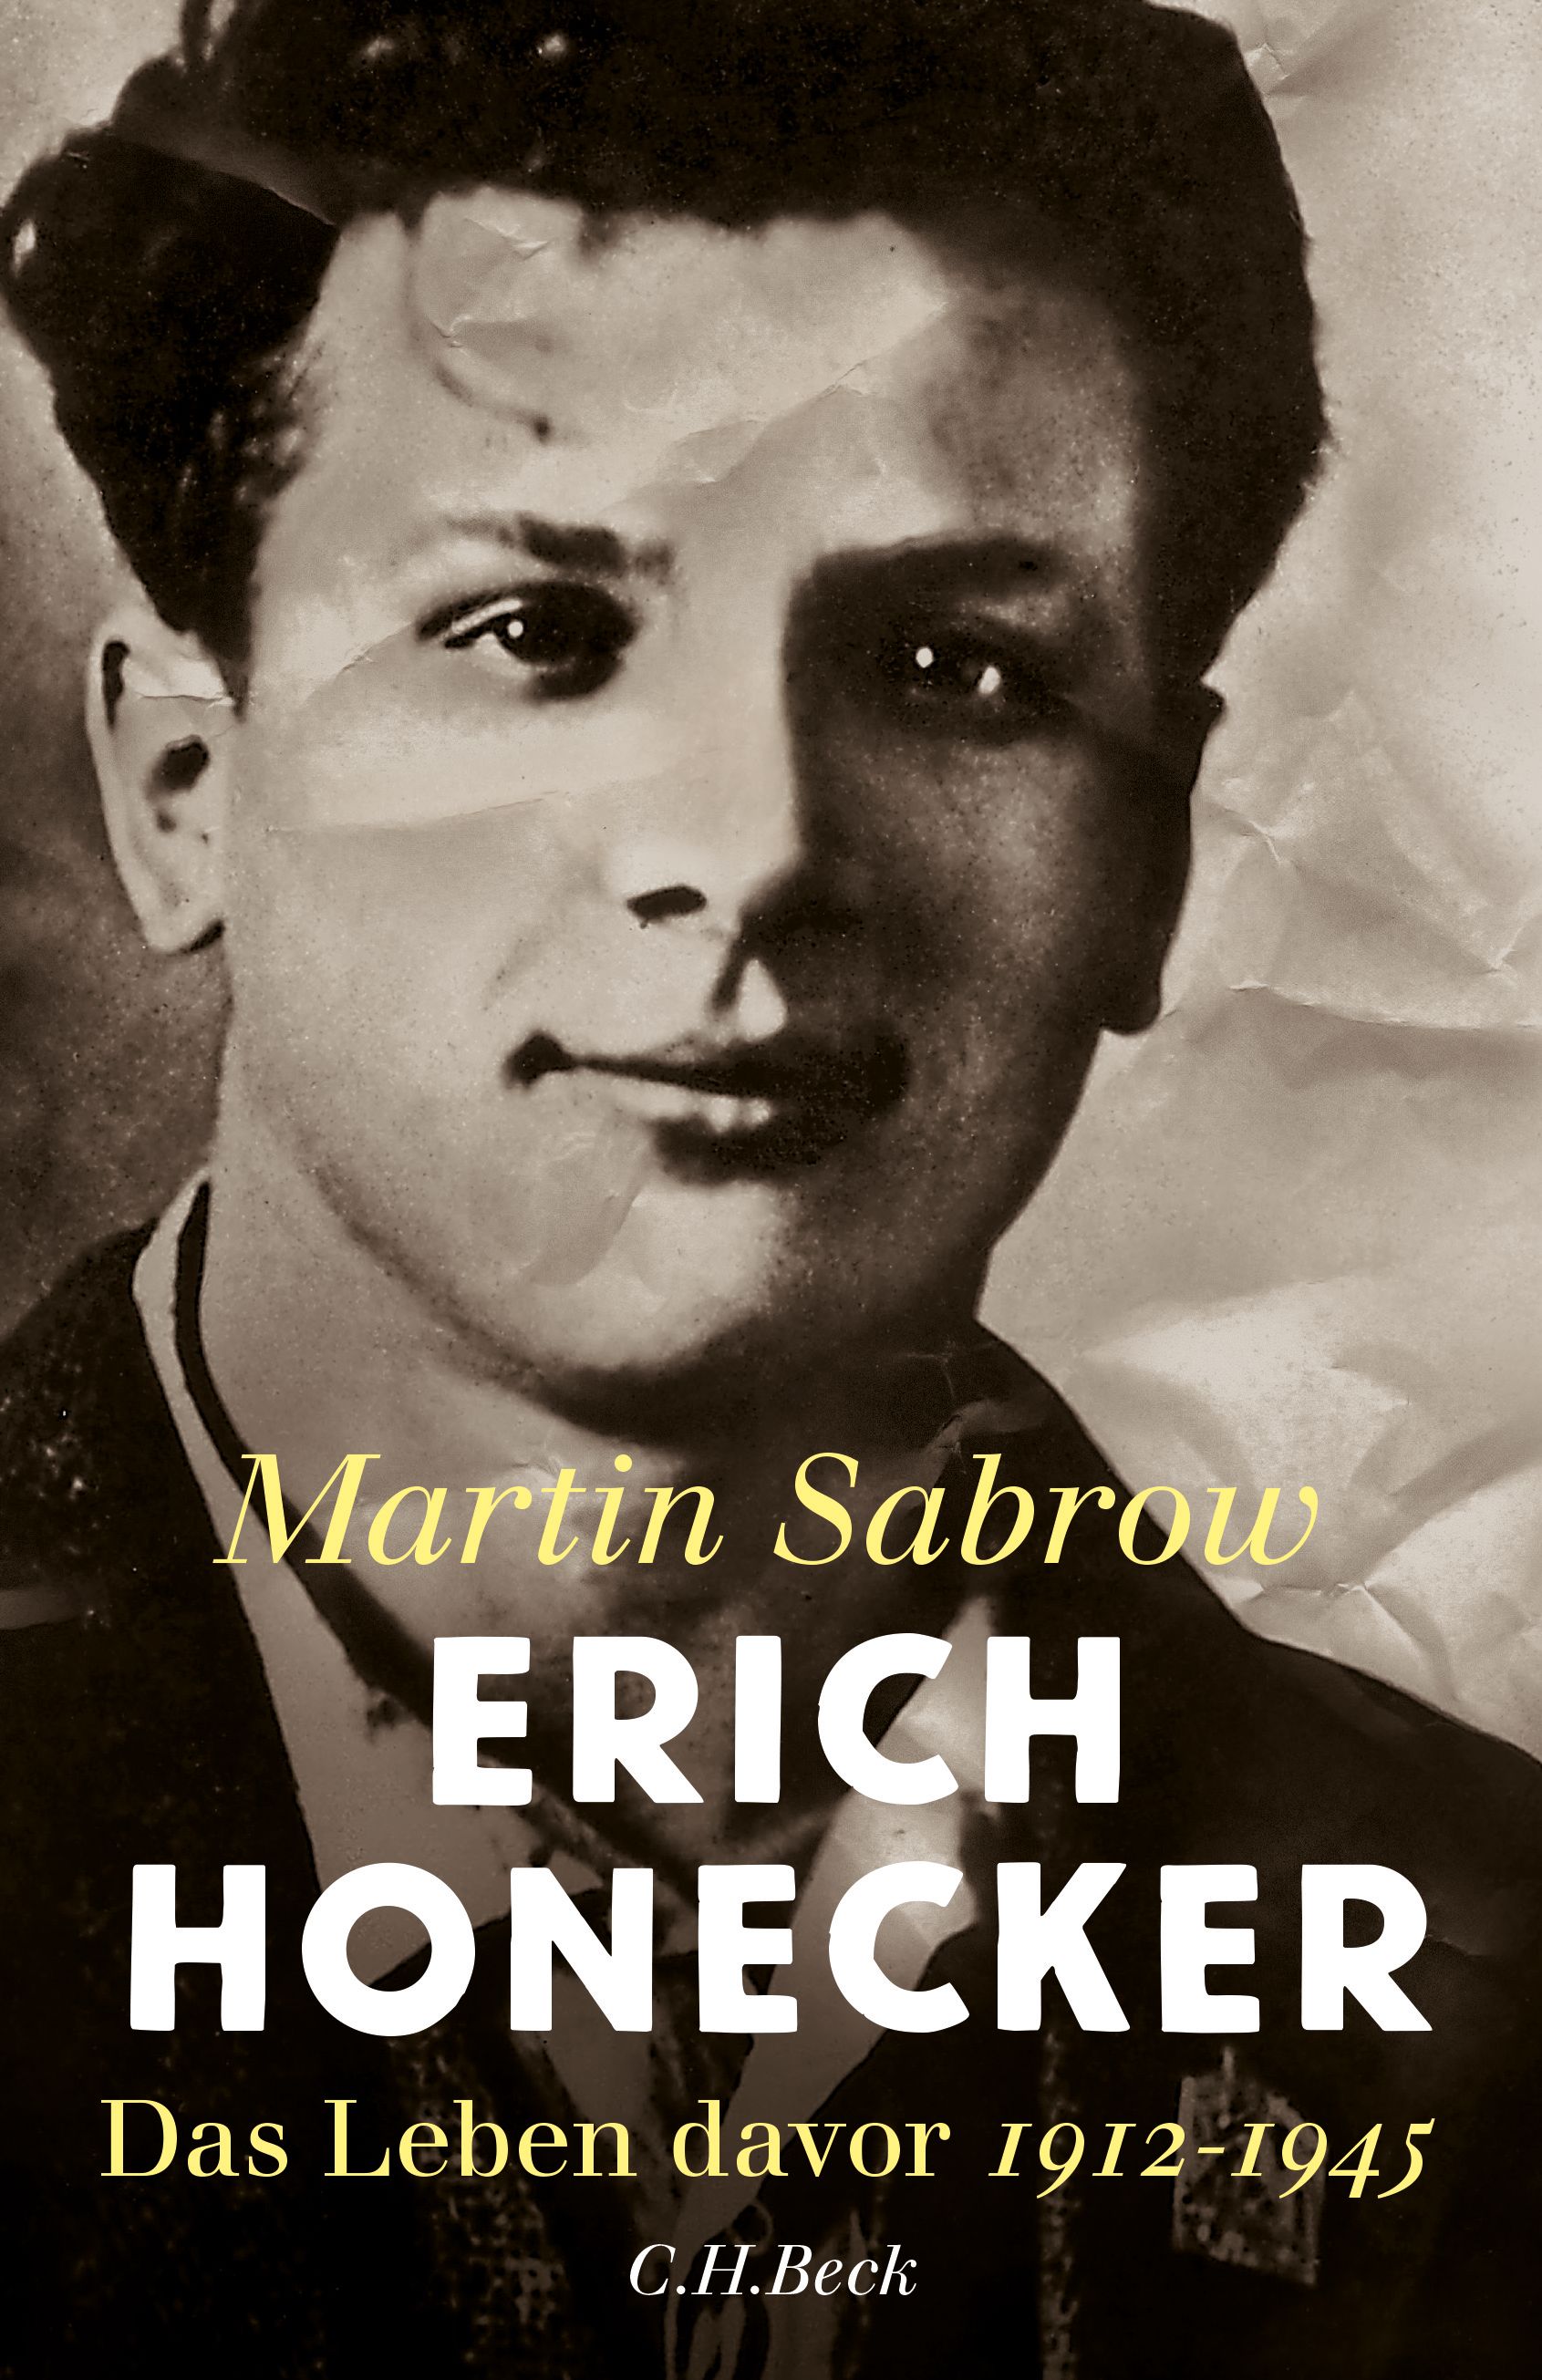 Martin Sabrow. Erich Honecker. Das Leben davor. 1912-1945